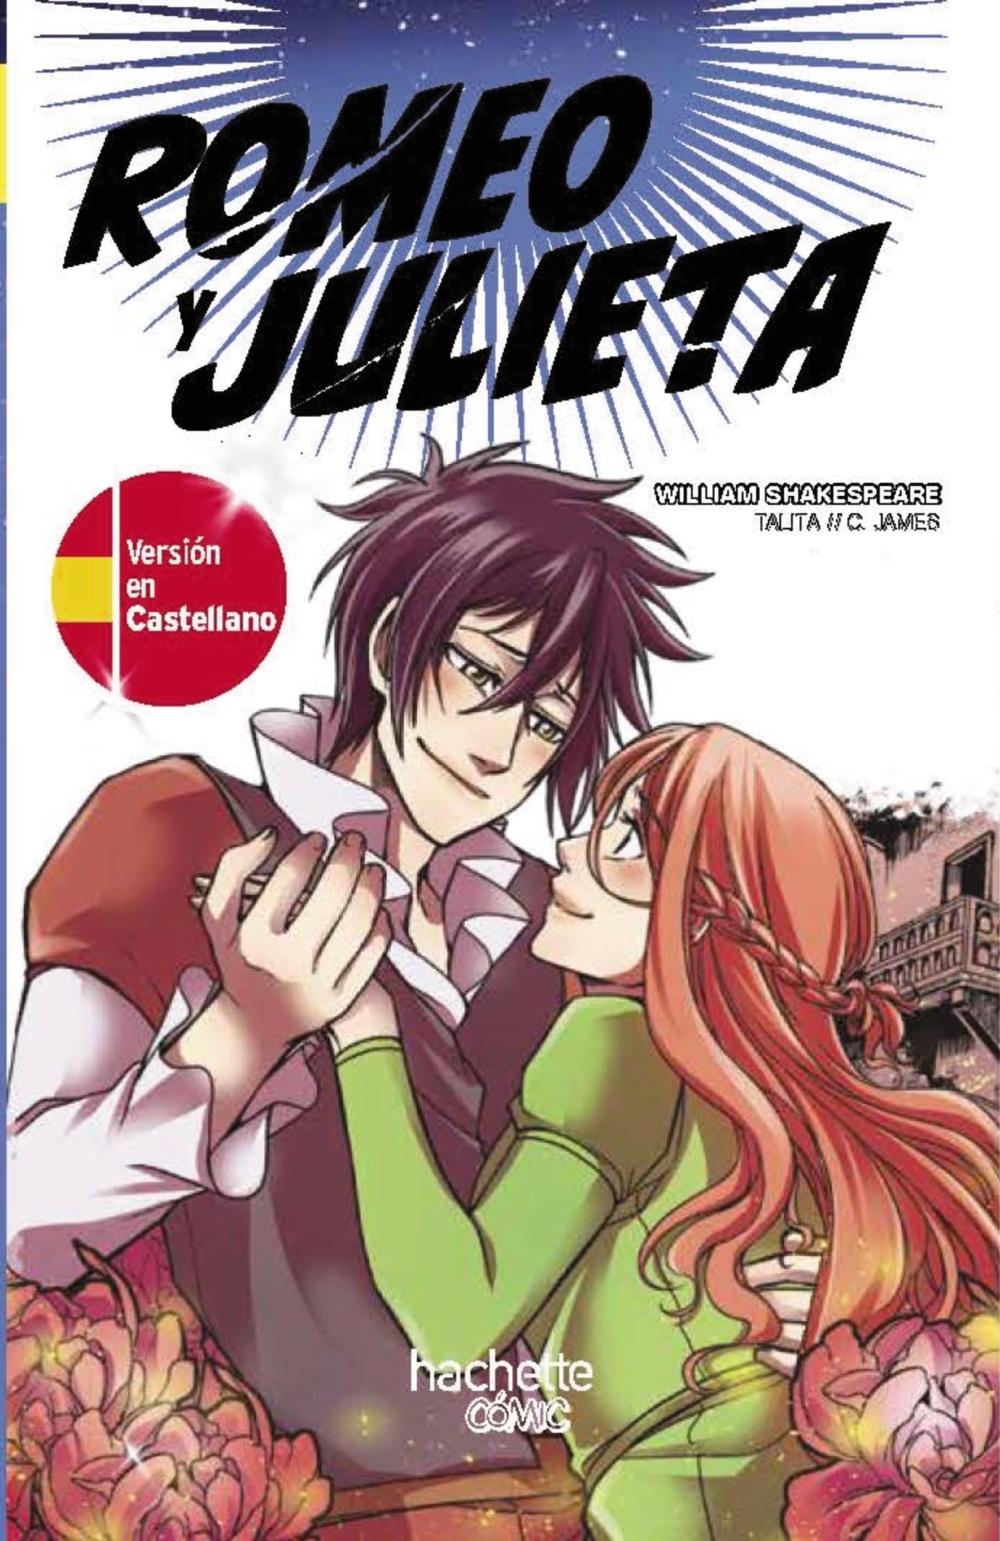 Romeo y Julieta, edición bilingüe (castellano-inglés) "MANGA"